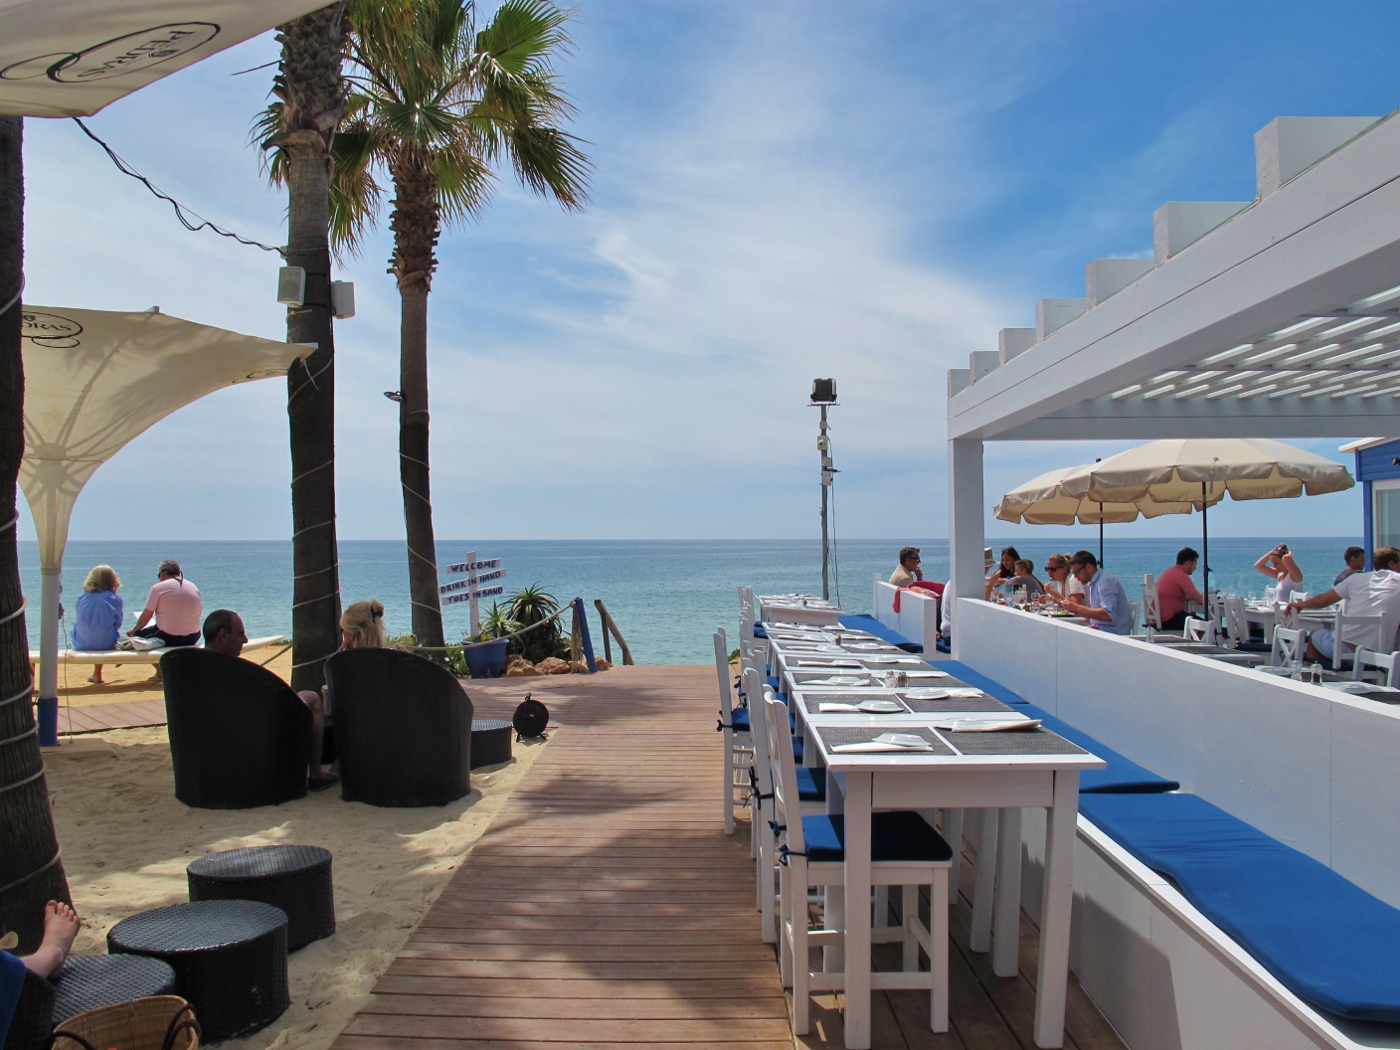 Izzys Beach Restaurant in Algarve | My Guide Algarve